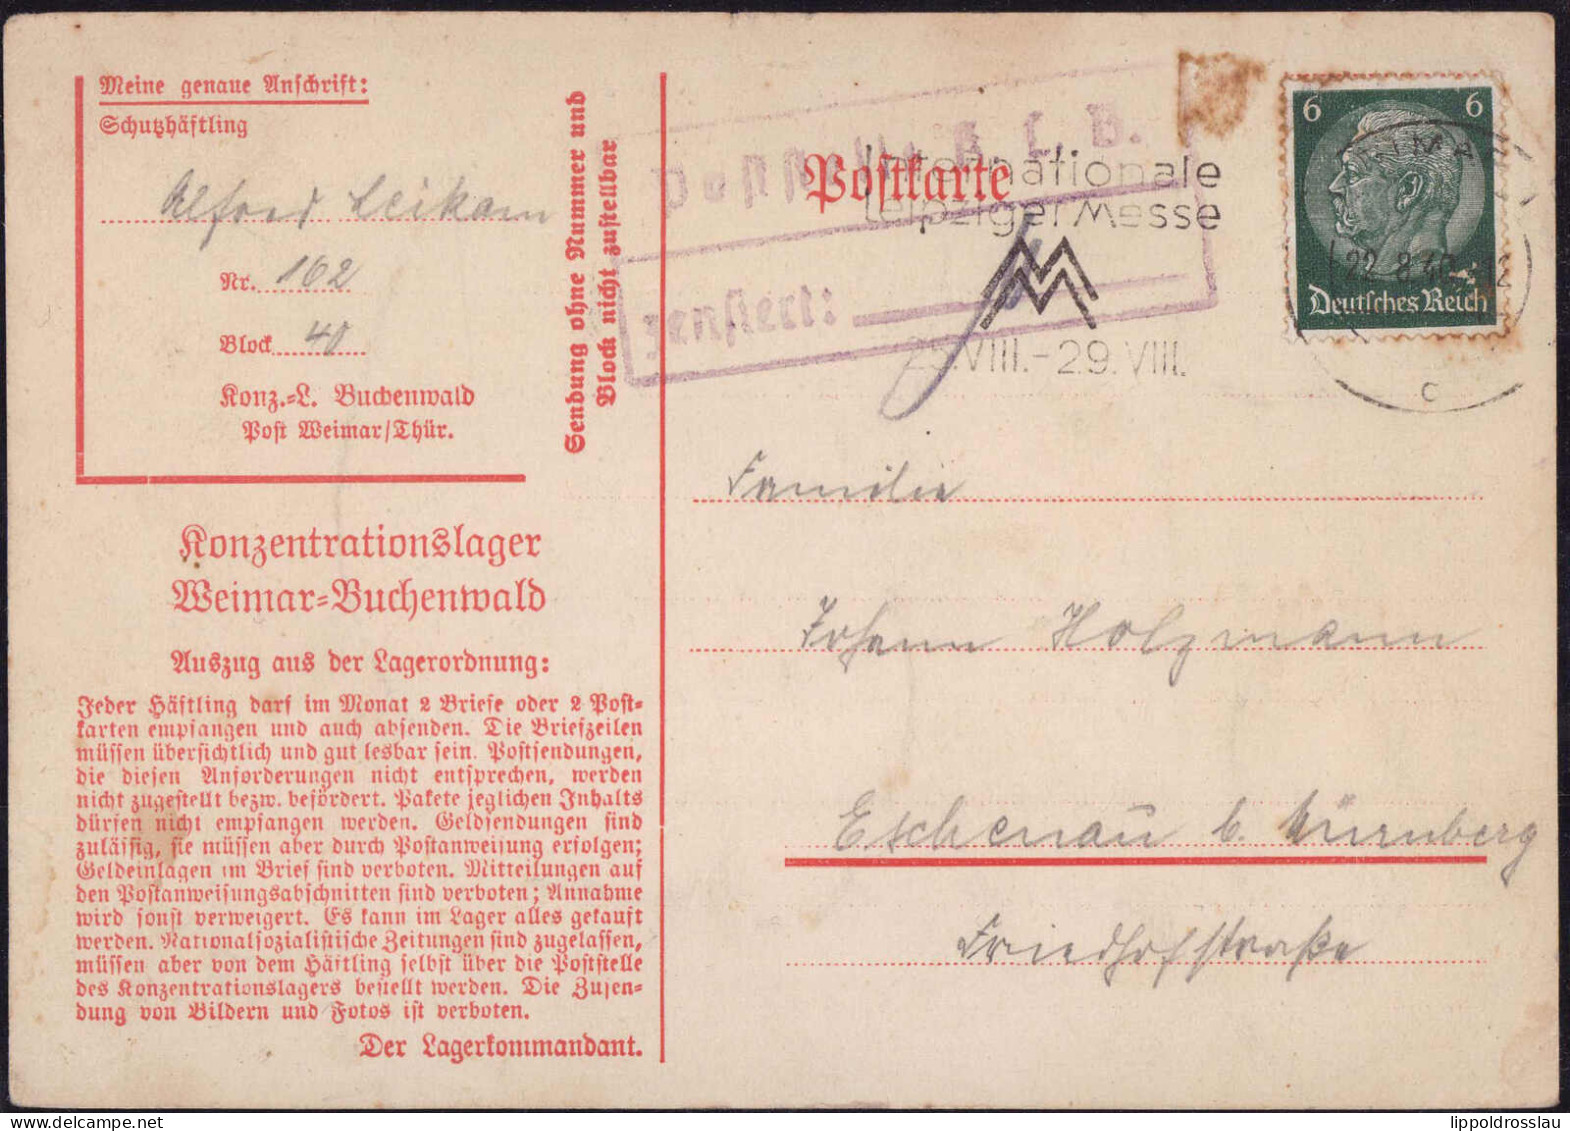 Gest. KZ-Post Weimar-Buchenwald 1940 Nach Eschenau - Andere & Zonder Classificatie